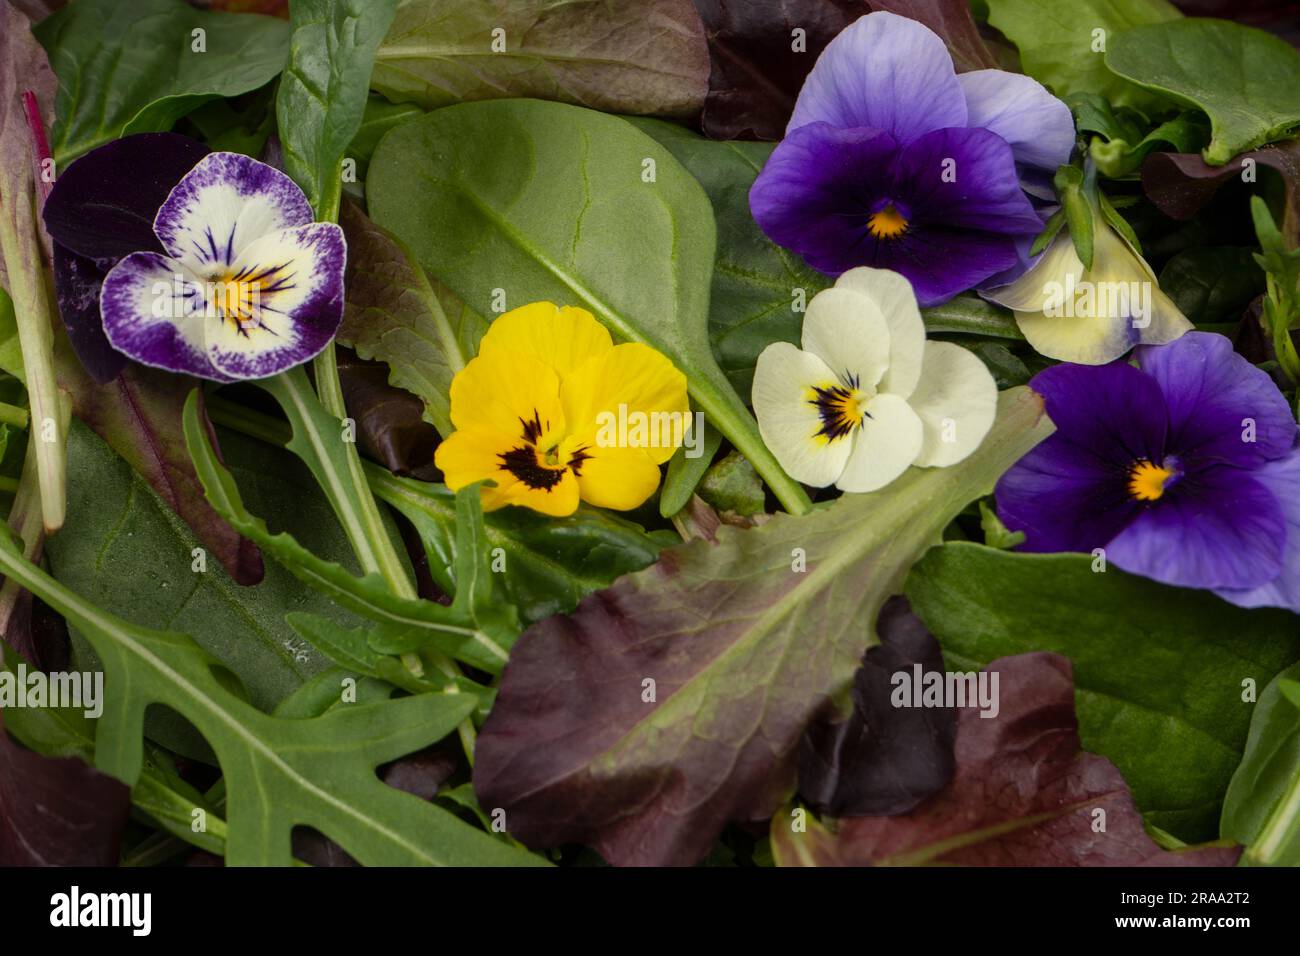 Frische Salatmischung mit essbaren Blumen. Stockfoto